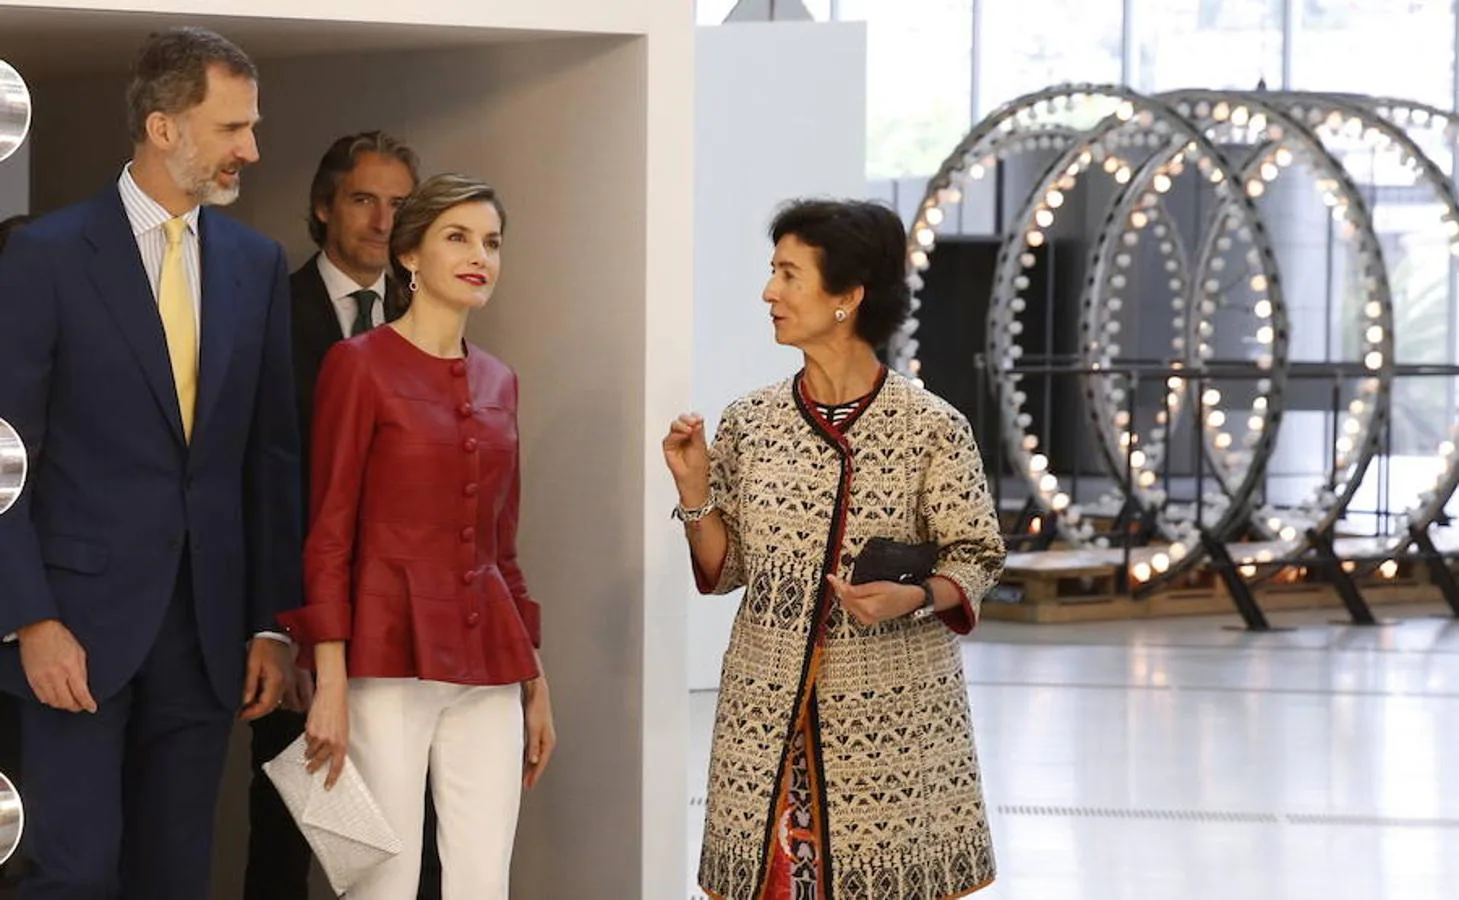 Los Reyes Felipe y Letizia recorren una de las salas de exposiciones en la inauguración del Centro Botín, el nuevo centro de arte que pone en marcha la Fundación Botín bajo un diseño de Renzo Piano y sobre la bahía de Santander. 